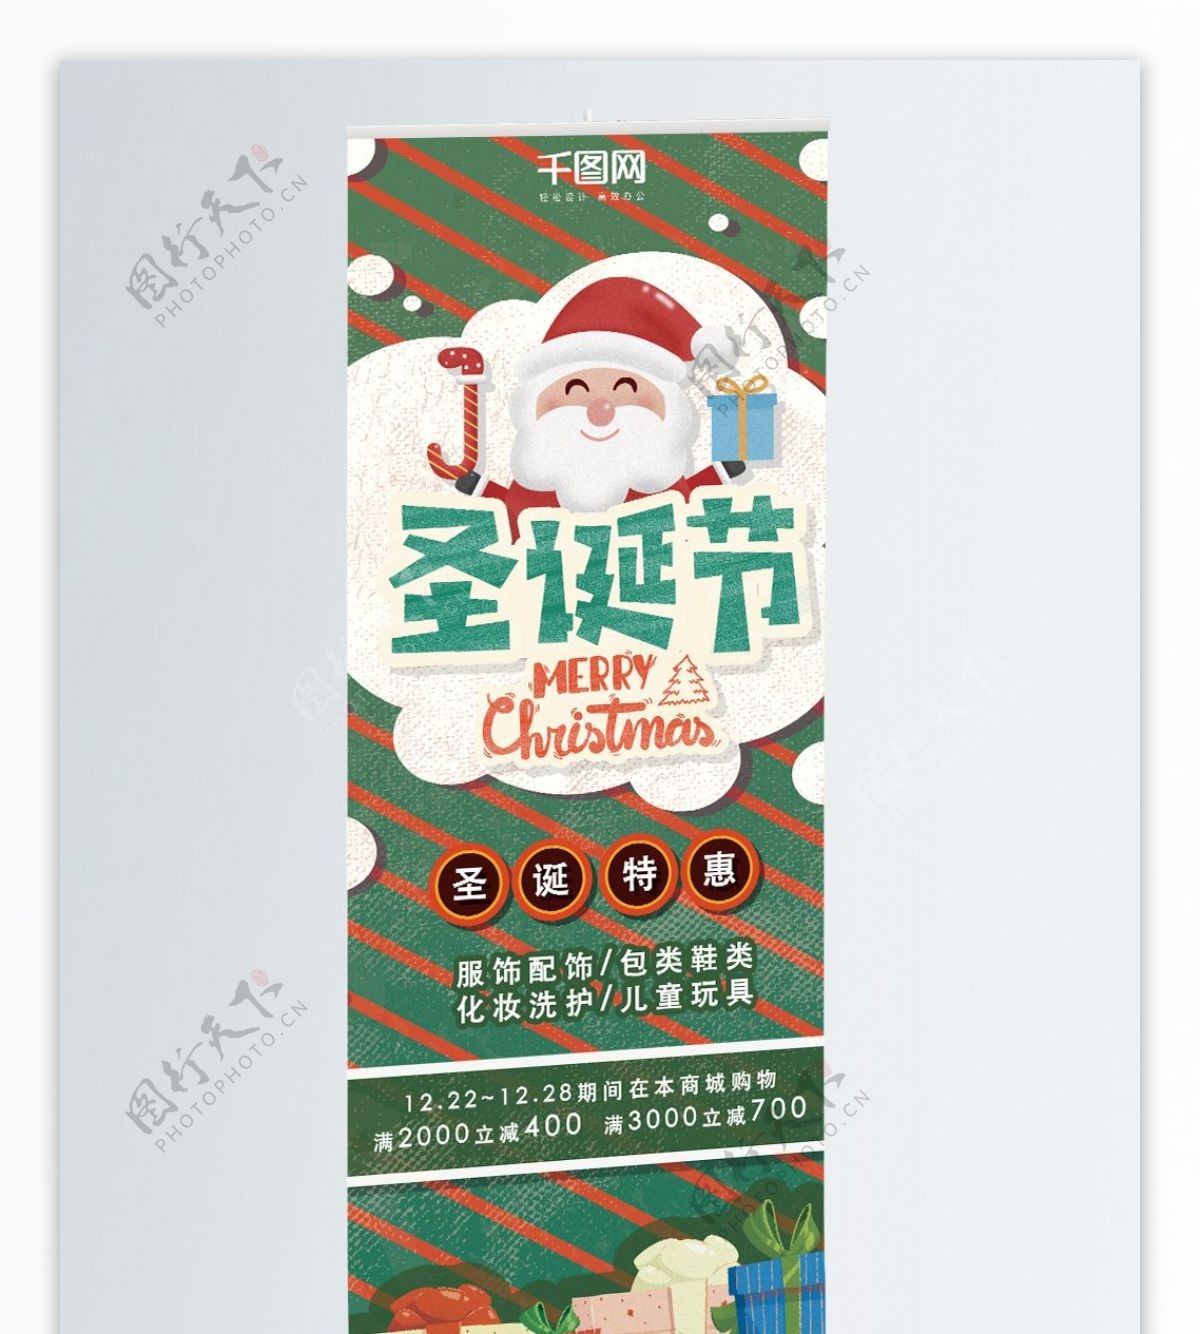 圣诞展架促销活动绿色可爱卡通礼物圣诞老人